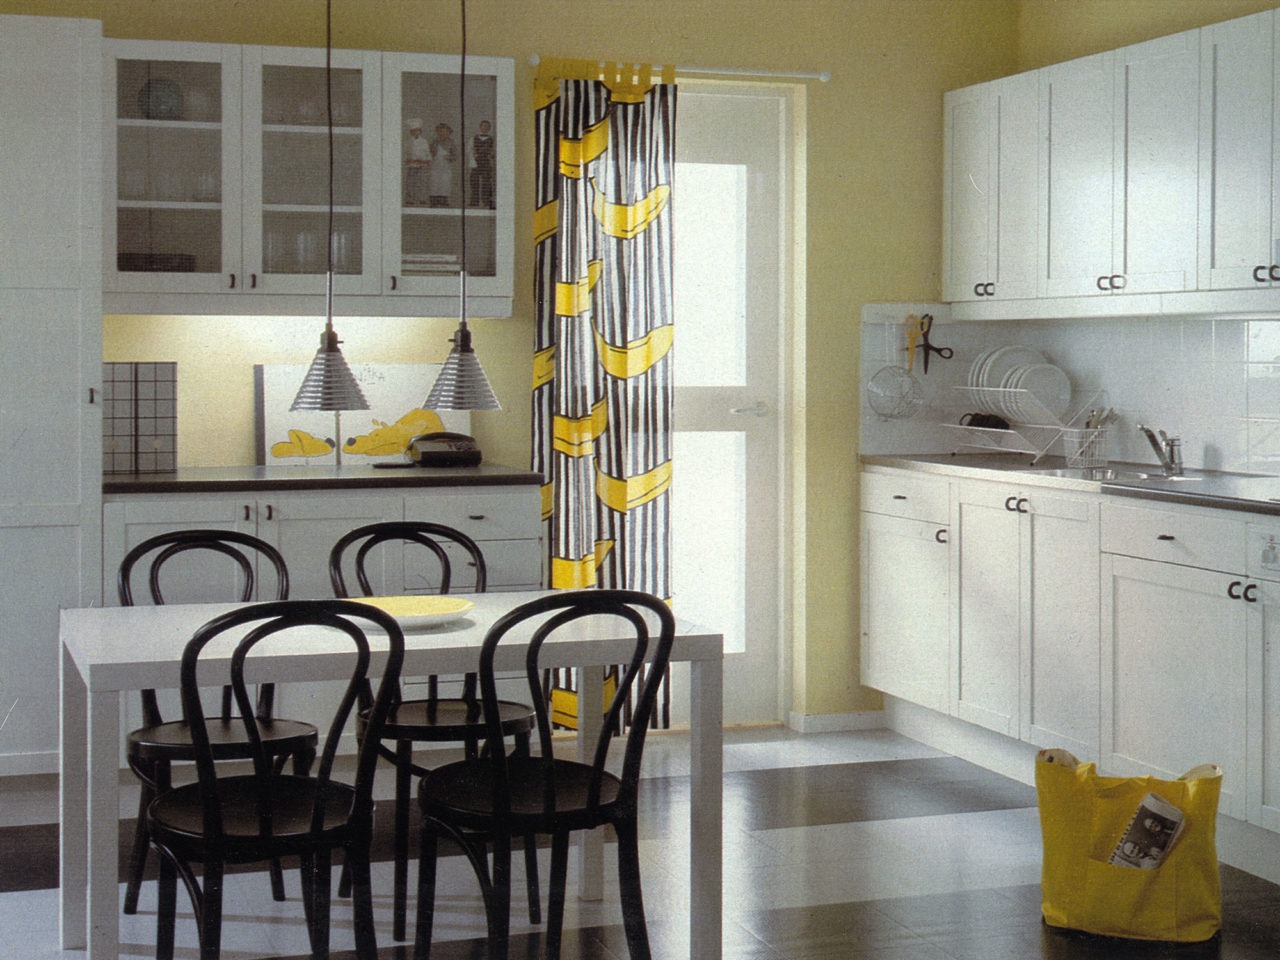 Cocina blanca salvo las sillas en torno a la mesa, y detalles en negro, y cortina con estampado de plátanos a la entrada.